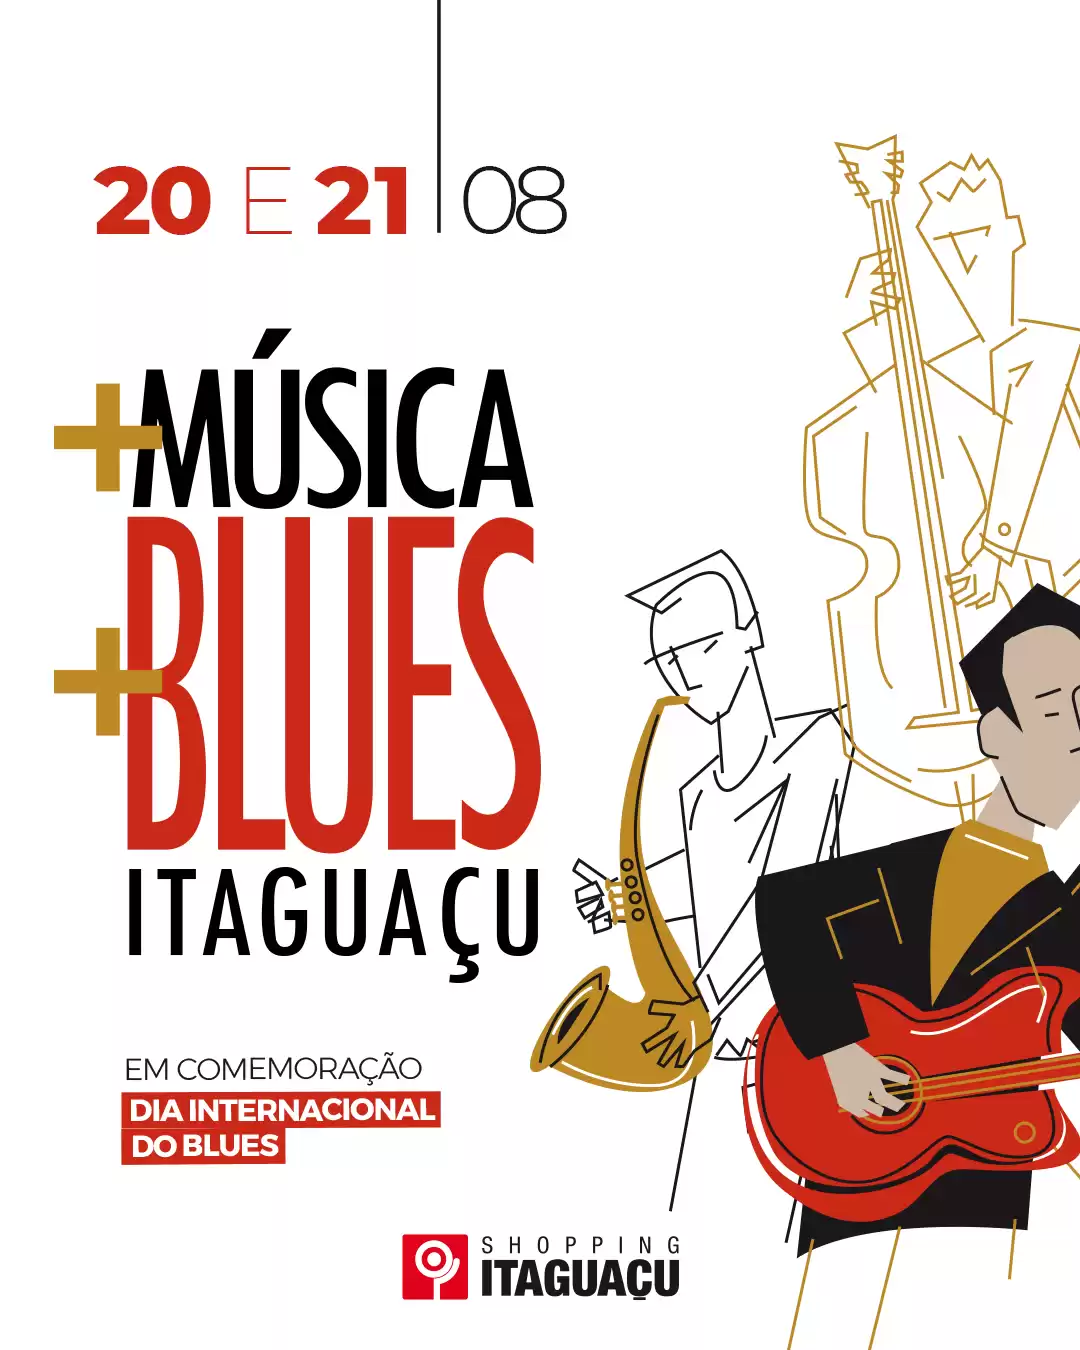 Shopping Itaguaçu promove shows de Blues gratuitos no fim de semana